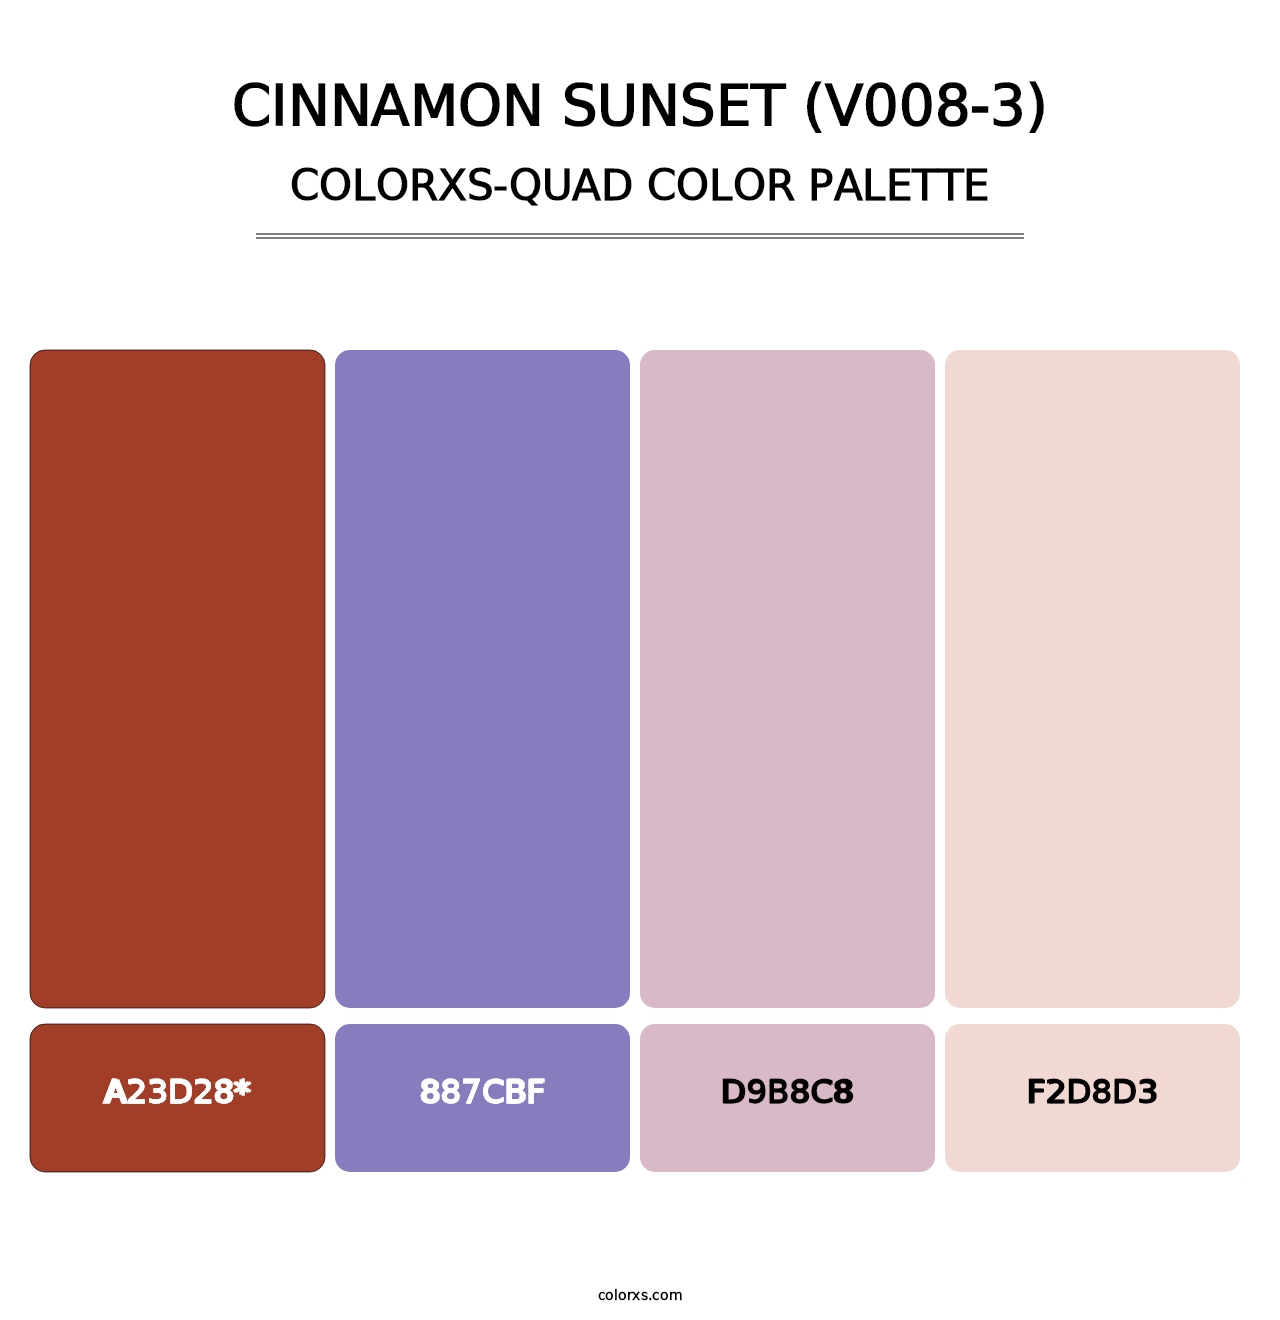 Cinnamon Sunset (V008-3) - Colorxs Quad Palette